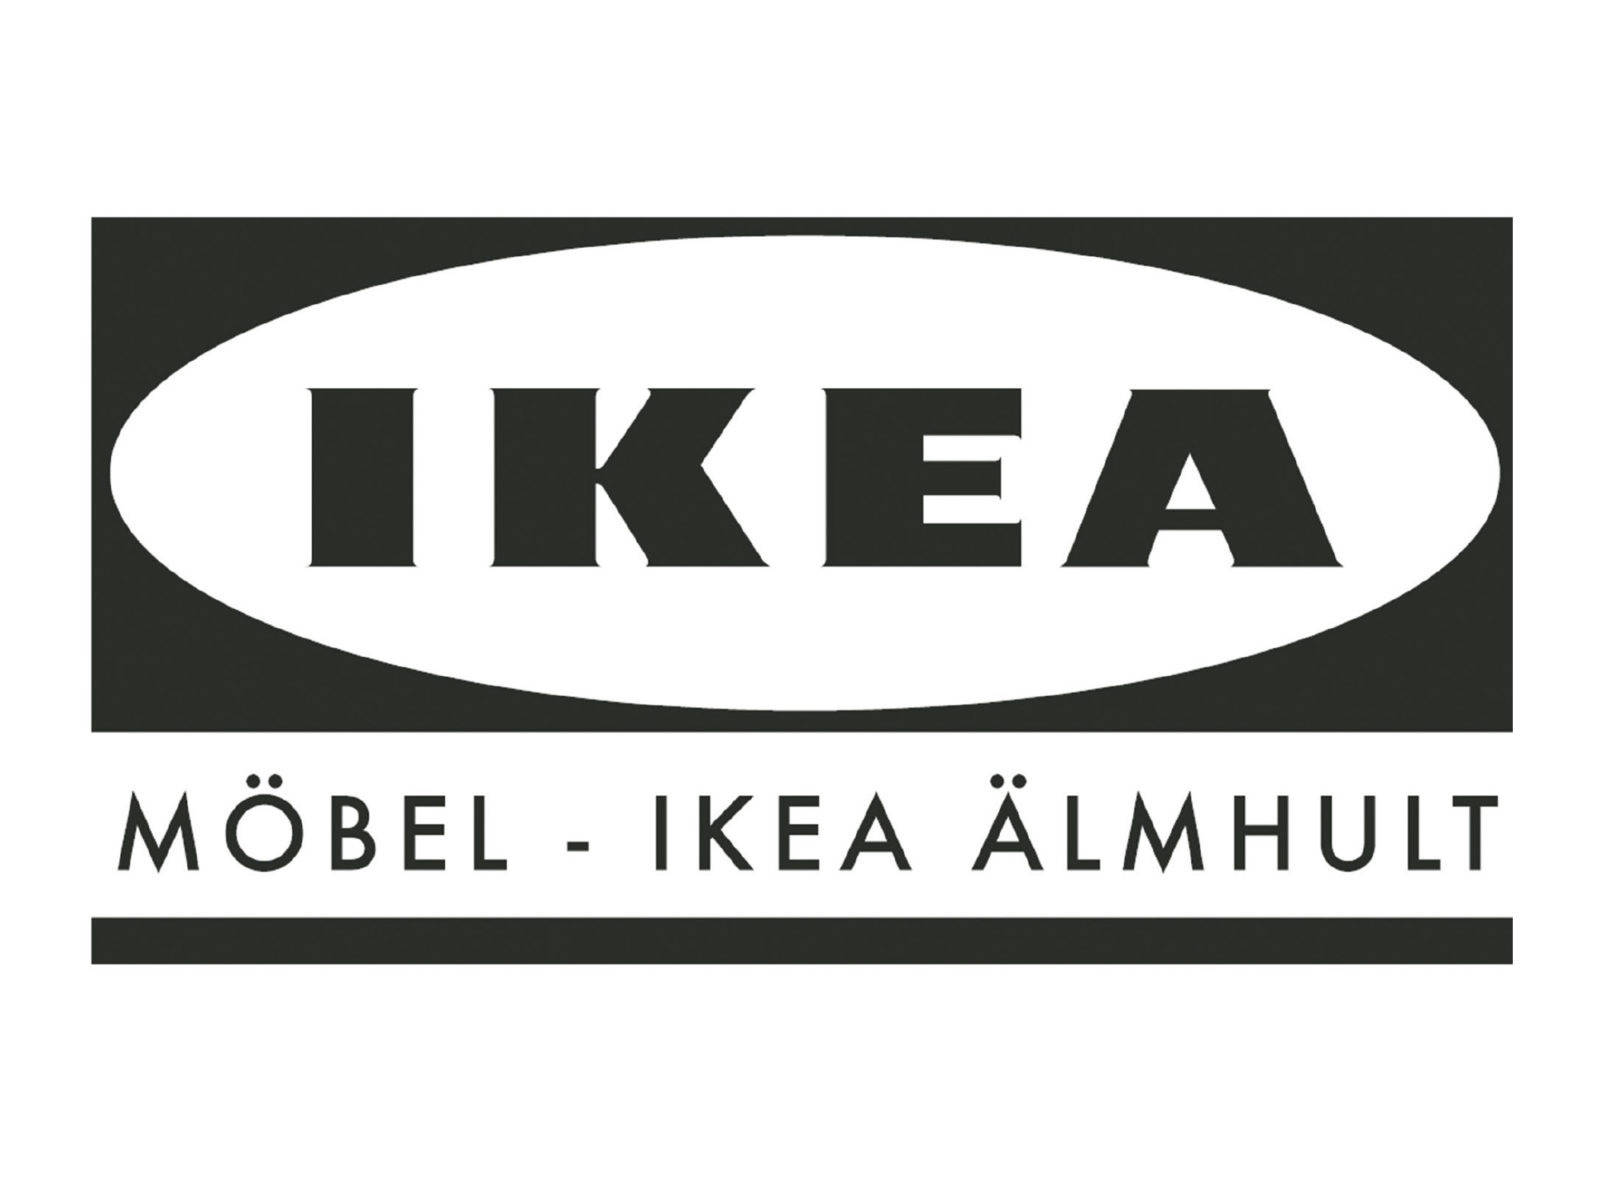 Logode Ikea En Blanco Y Negro. Fondo de pantalla